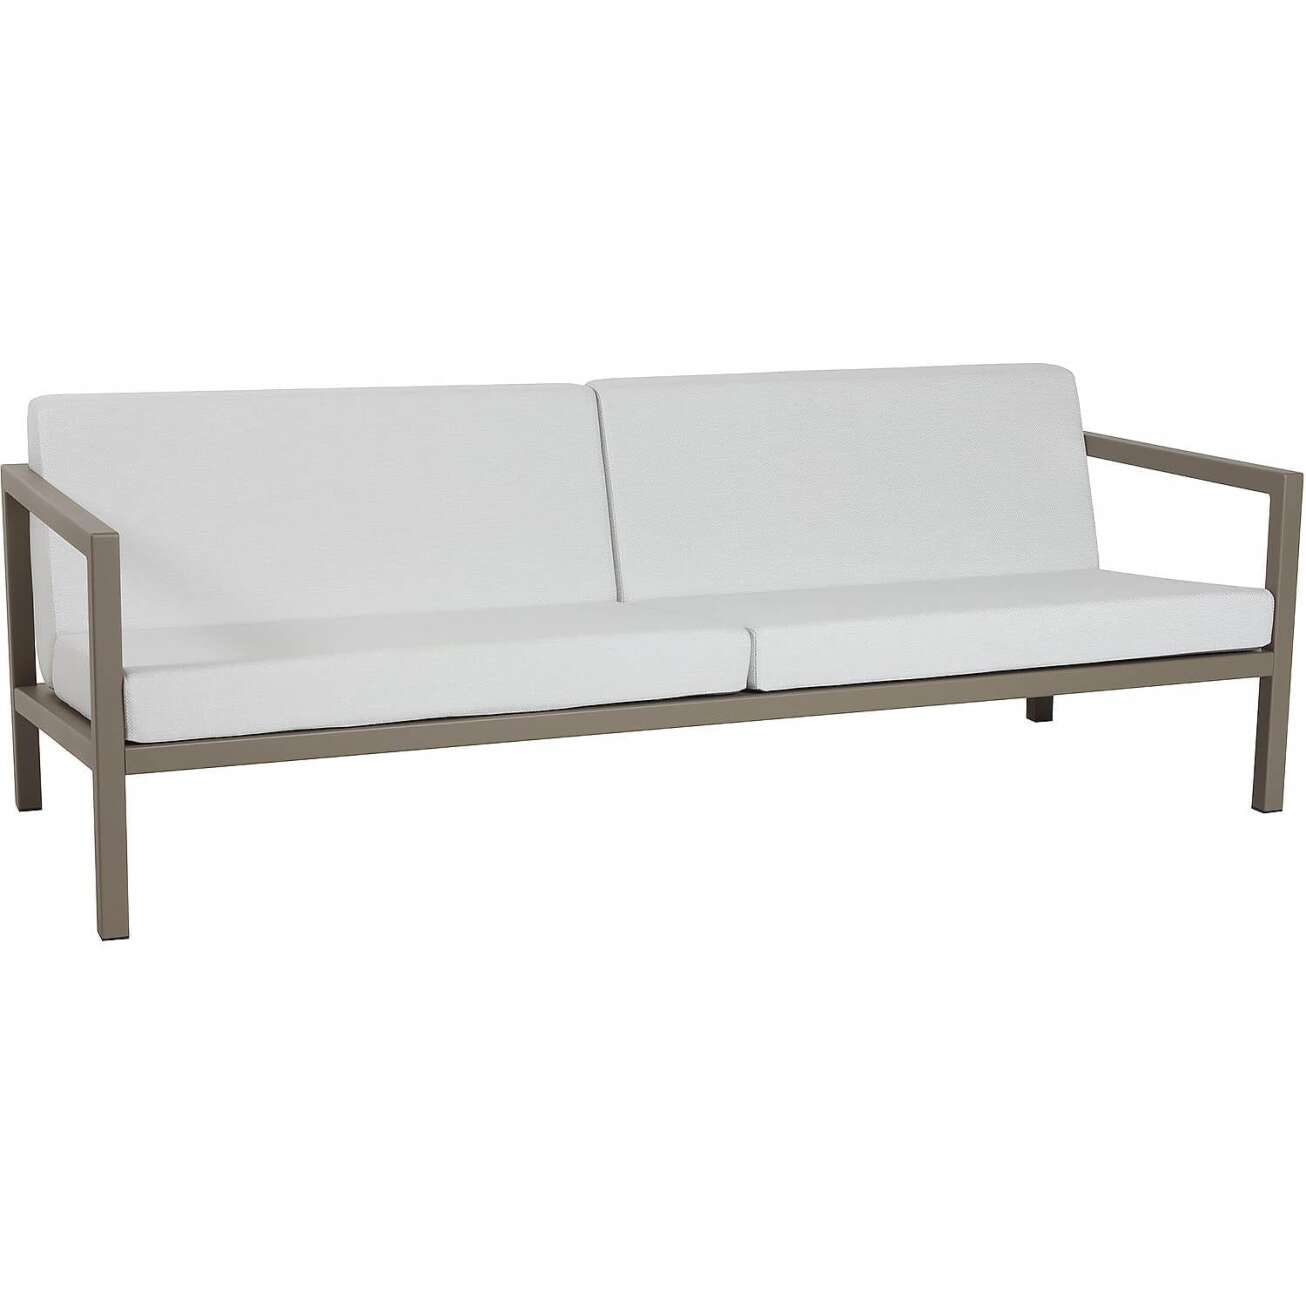 Sundays Frame 3-seter sofa i brun aluminium med hvite puter